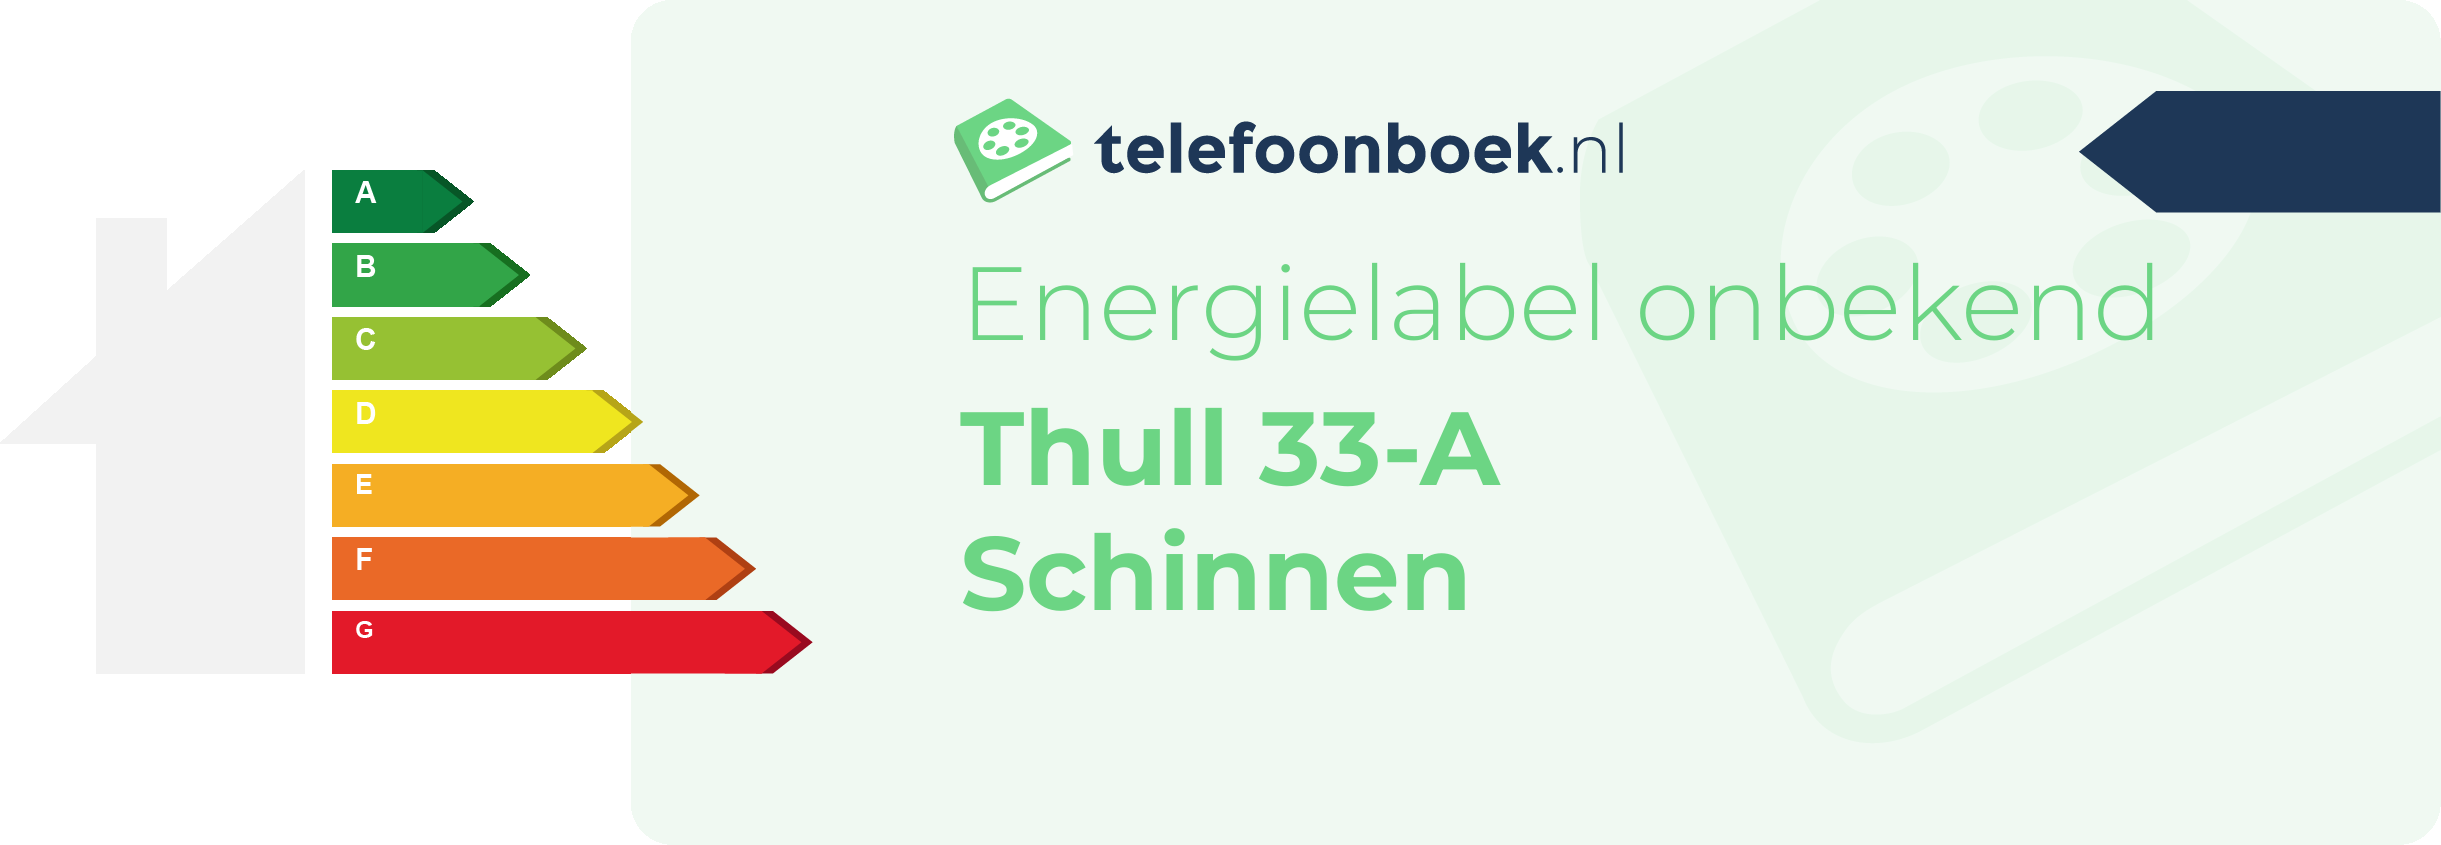 Energielabel Thull 33-A Schinnen